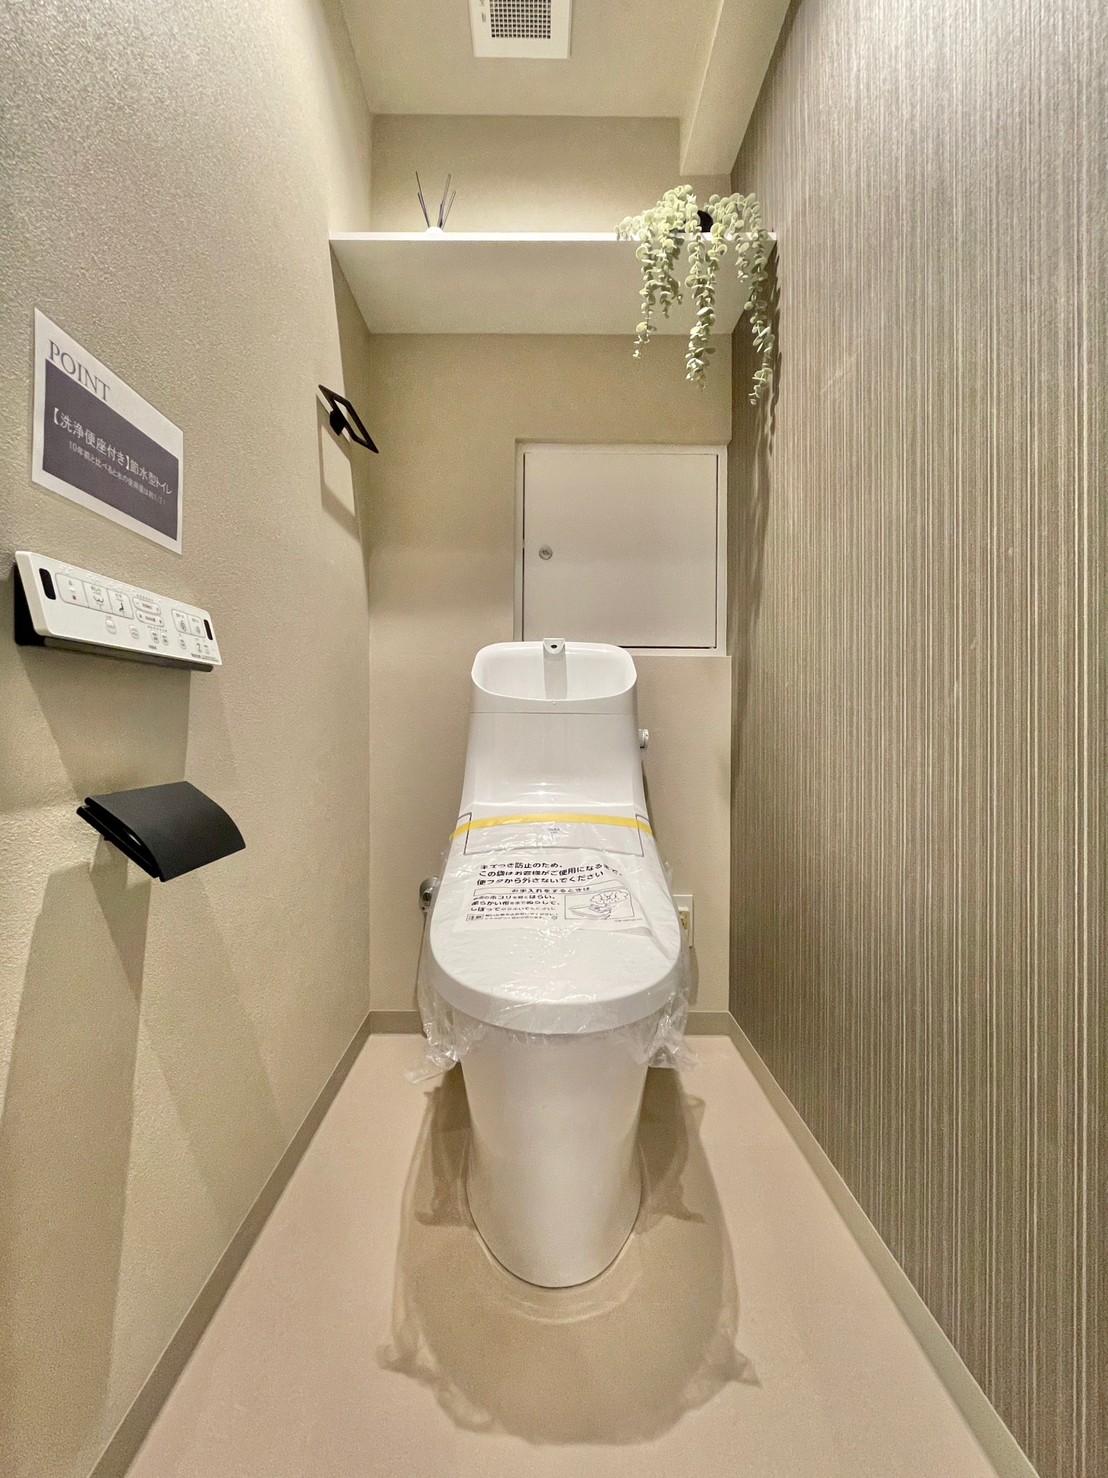 トイレA 独立空間の温水洗浄便座付きトイレは手洗い一体型を採用しています。凹凸が少なくほこりがたまりにくいため、お掃除が簡単にできるのが特徴ですよ。使用後すぐに手を洗うことができて衛生的です。